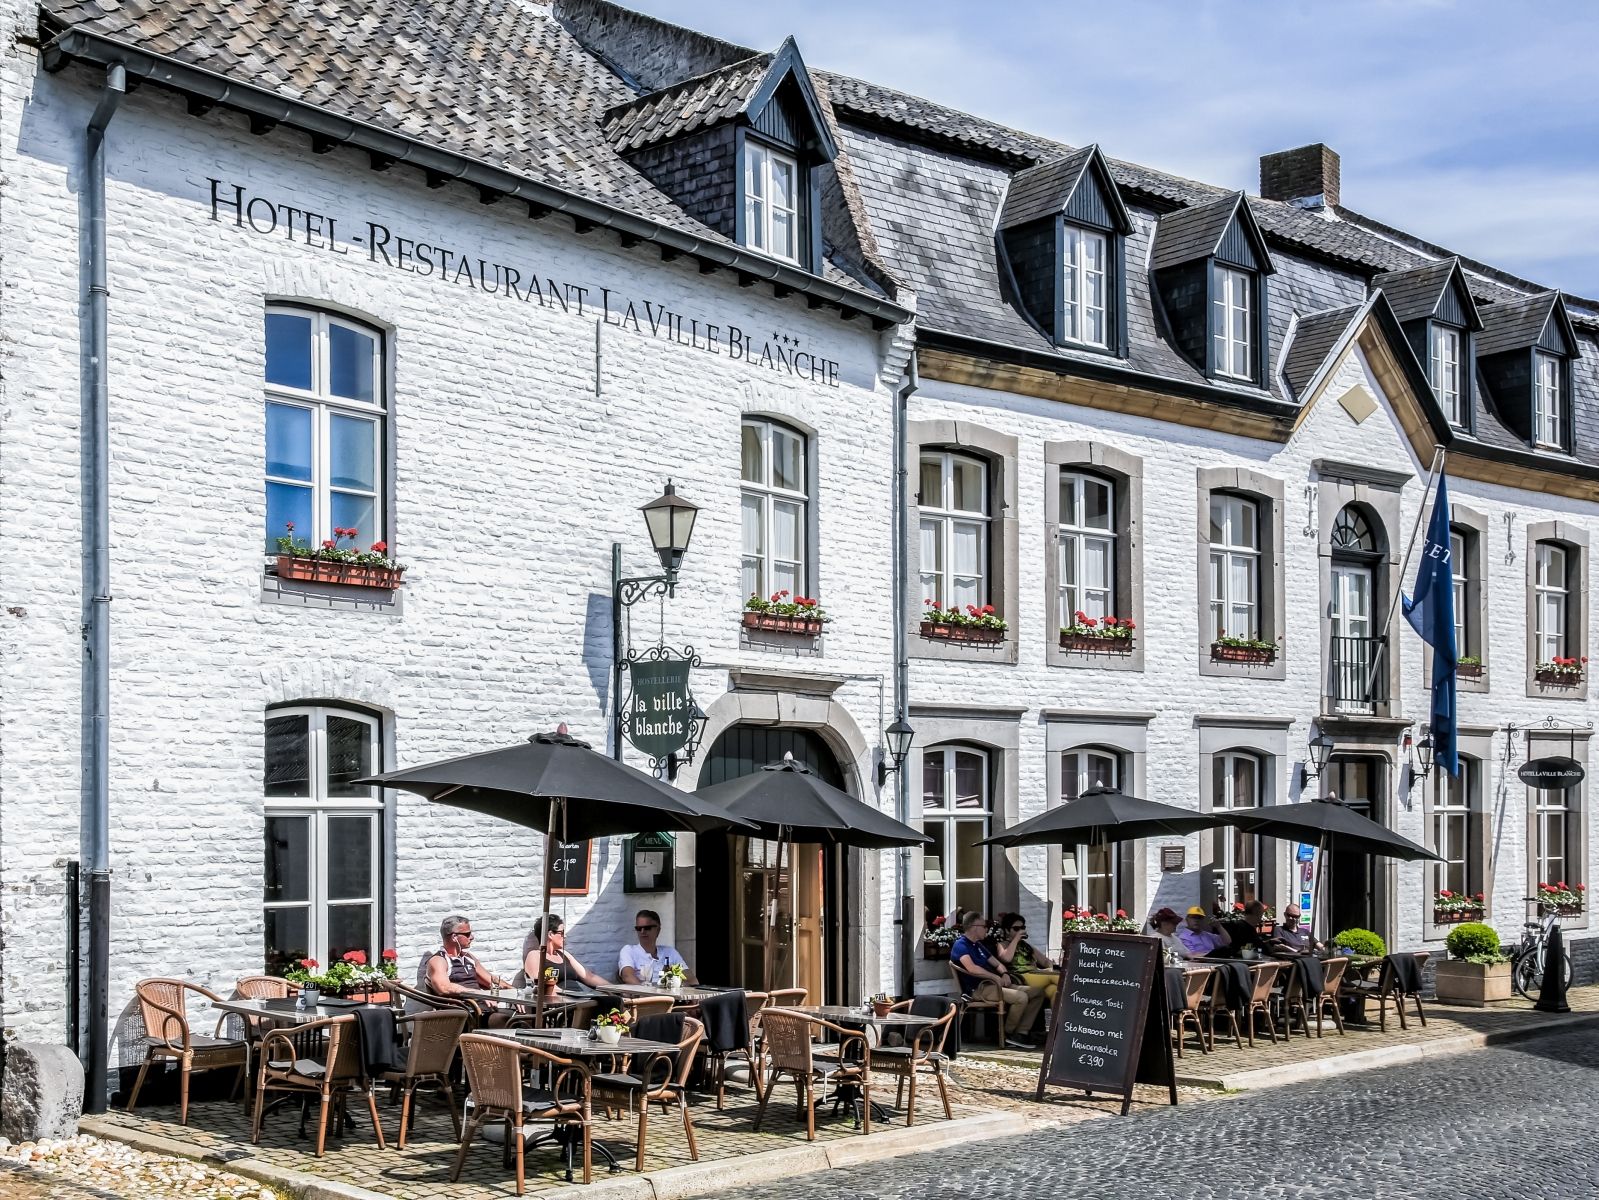 Fletcher Hotel-Restaurant La Ville Blanche - Thorn - Nederland